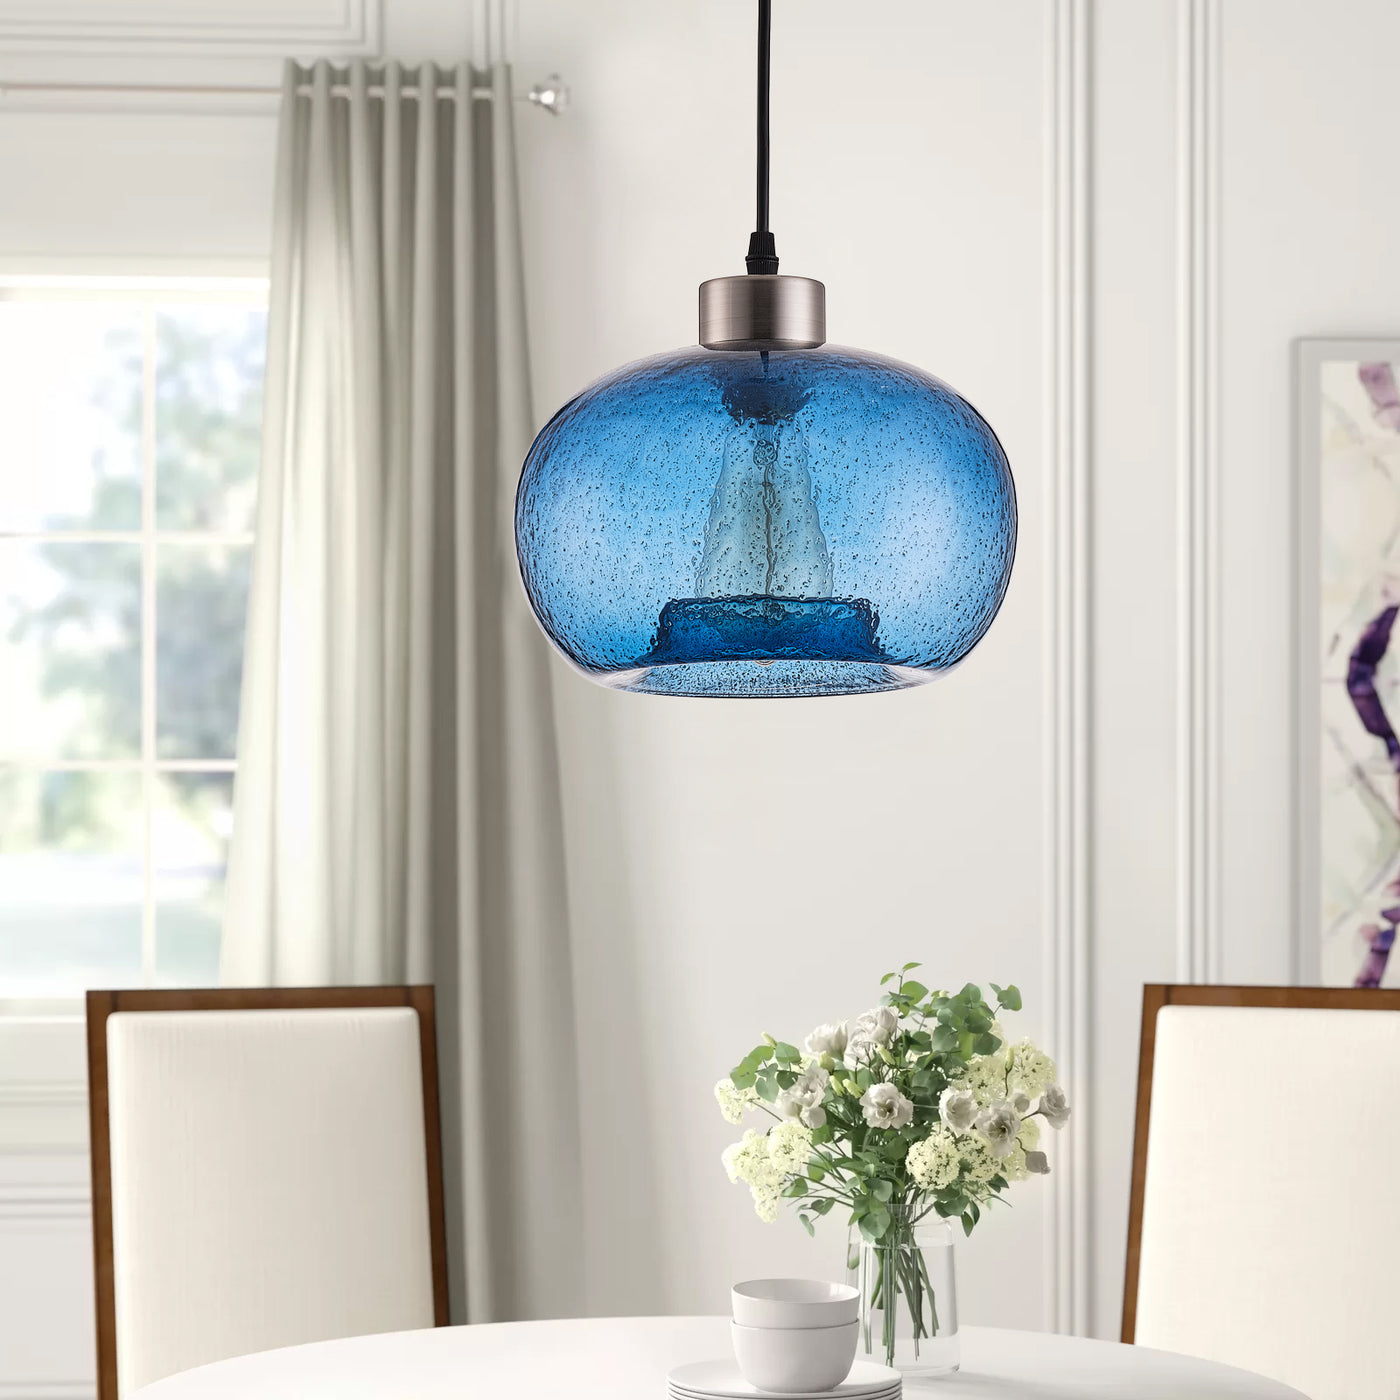 1-Light Glass Bowl Shade Design Pendant Lighting